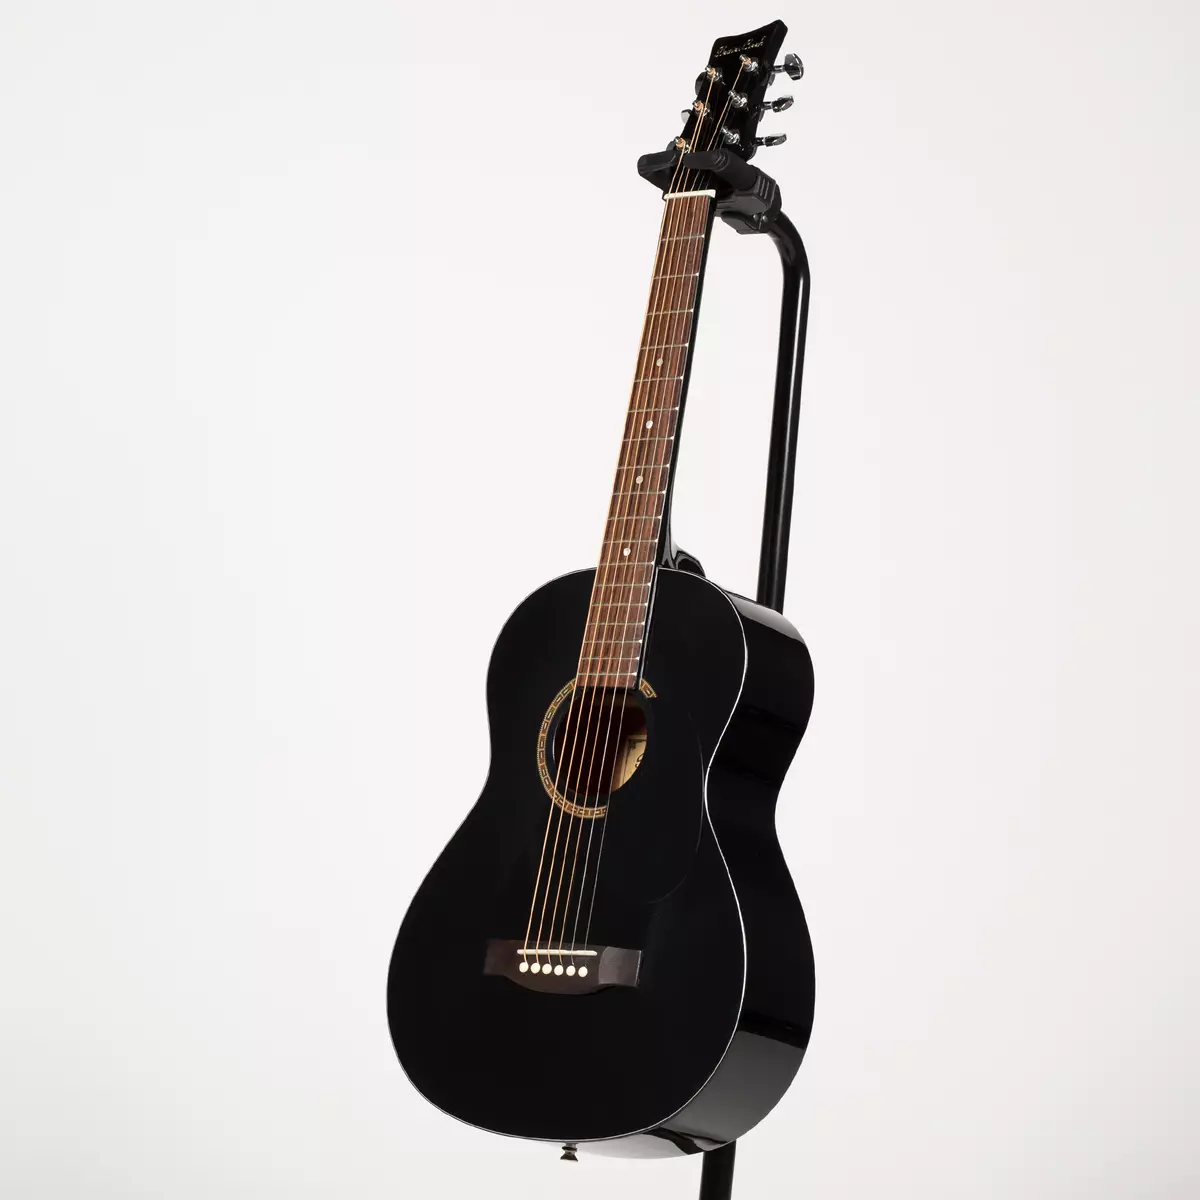 काळा गिटार: क्लासिक सहा-स्ट्रिंग आणि इतर गिटार, पांढरा आणि लाल-काळा रंग, मॅट आणि चमक 26252_4